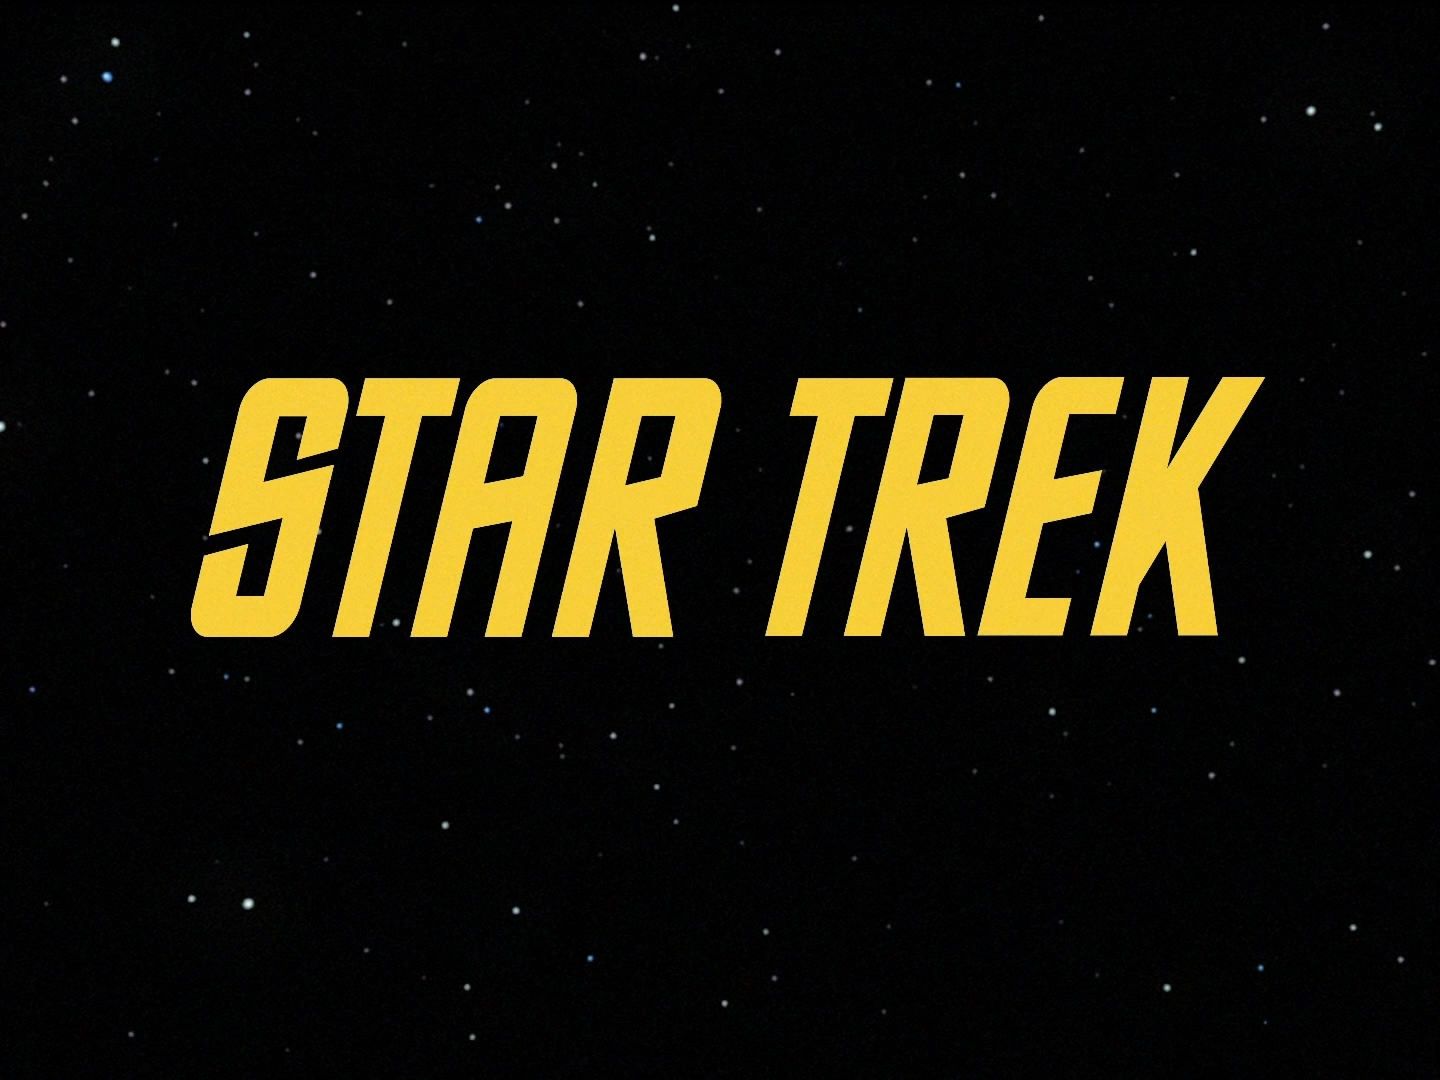 Captain Kirk’s Star Trek is Complete